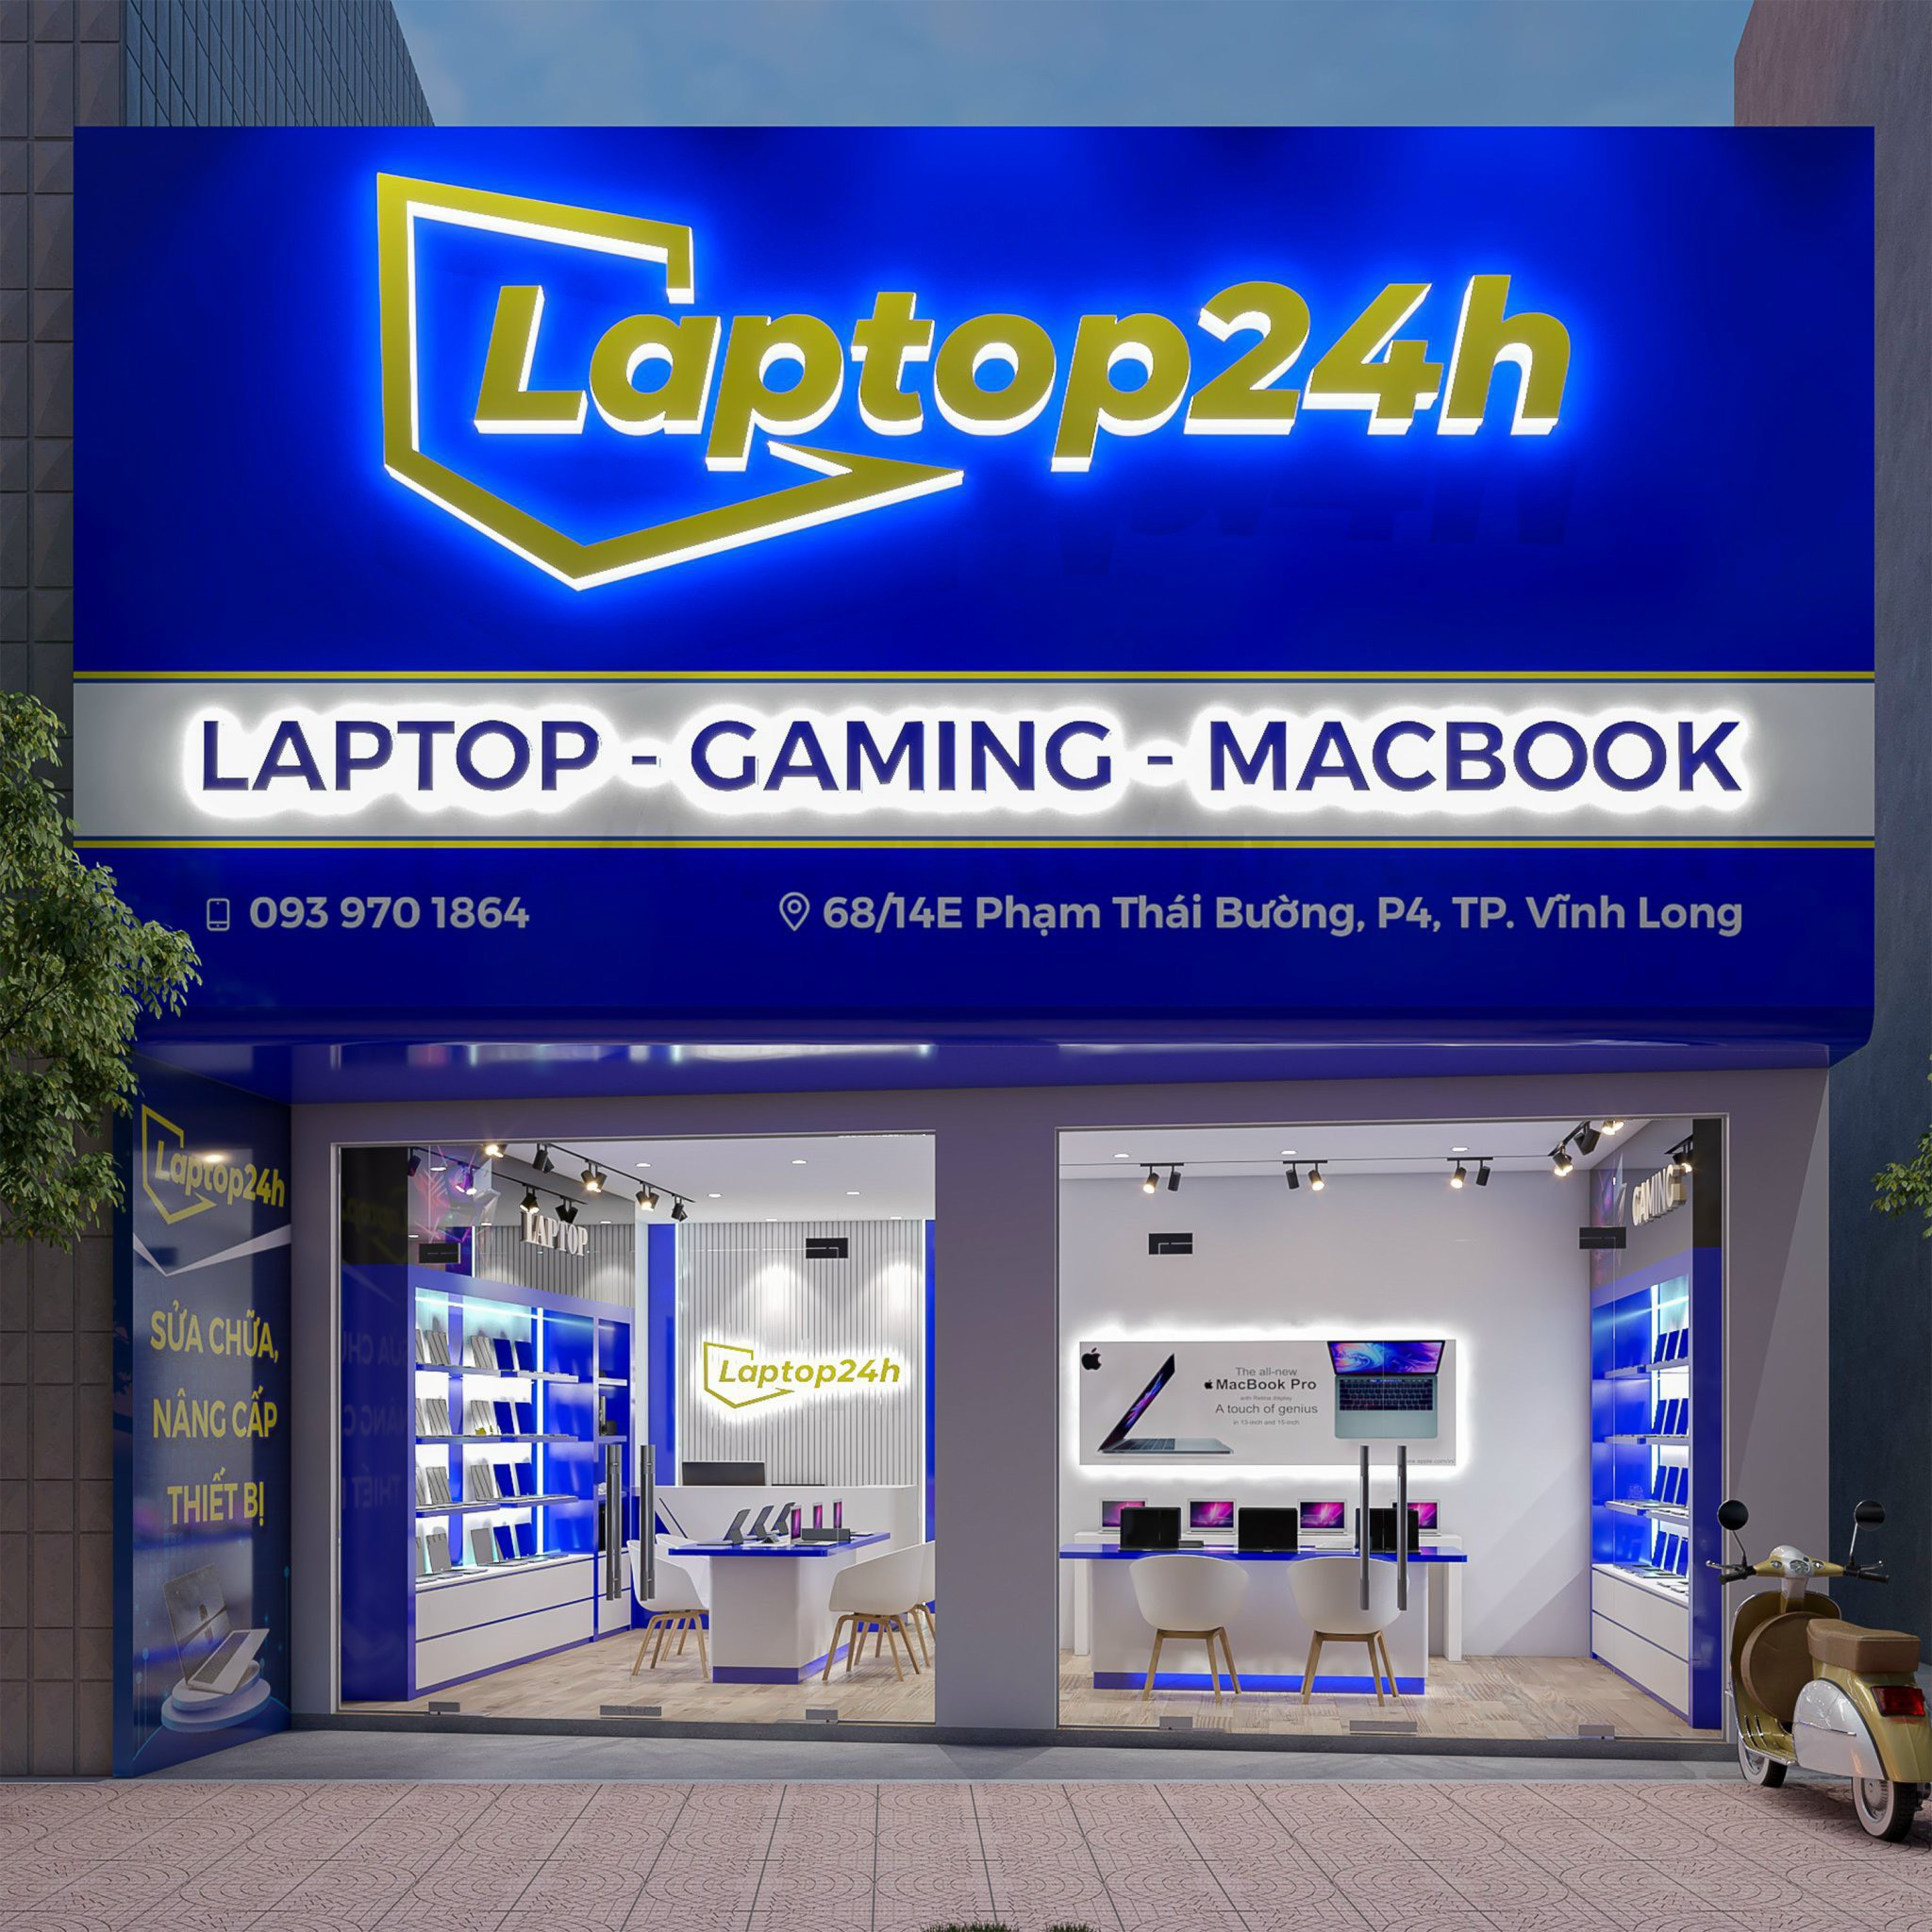  Laptop24H - Địa chỉ uy tín mua bán Laptop cũ- mới tại Vĩnh Long